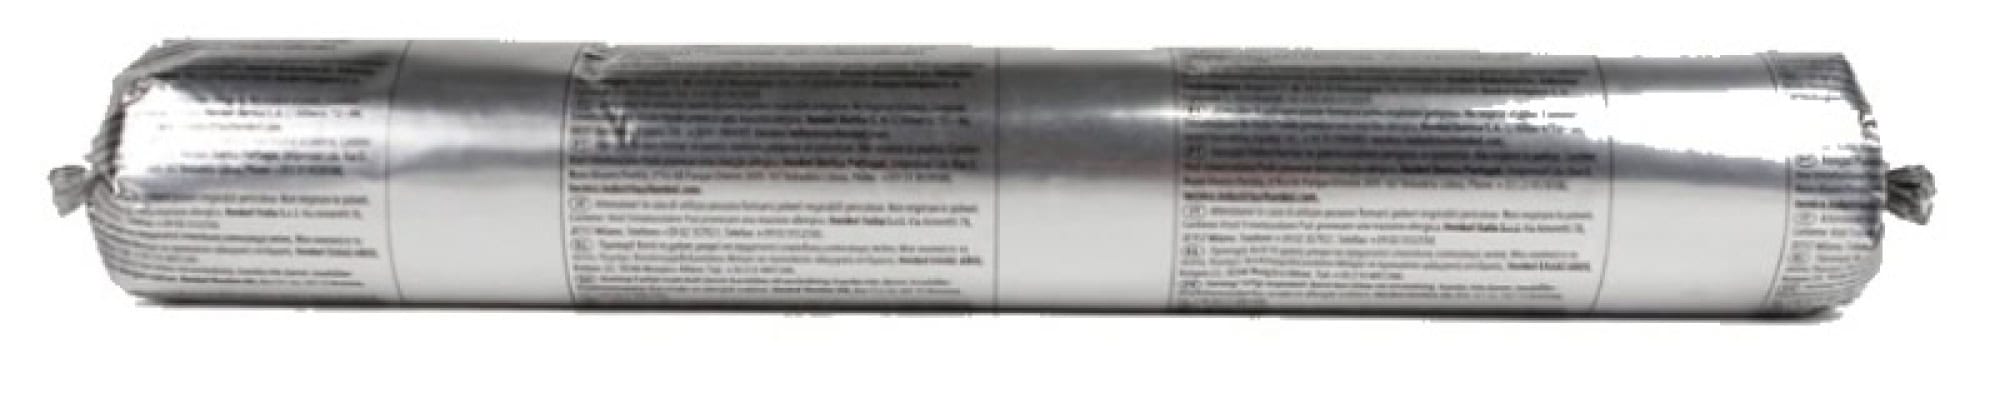 Henkel™ Teroson® Silanmodifizierter Polymer Kleb-/Dichtstoff MS 935, 310 ml Folienbeutel, Schwarz, Thixotrop, 1K, 2485737, Für Elektronik Anwendungen